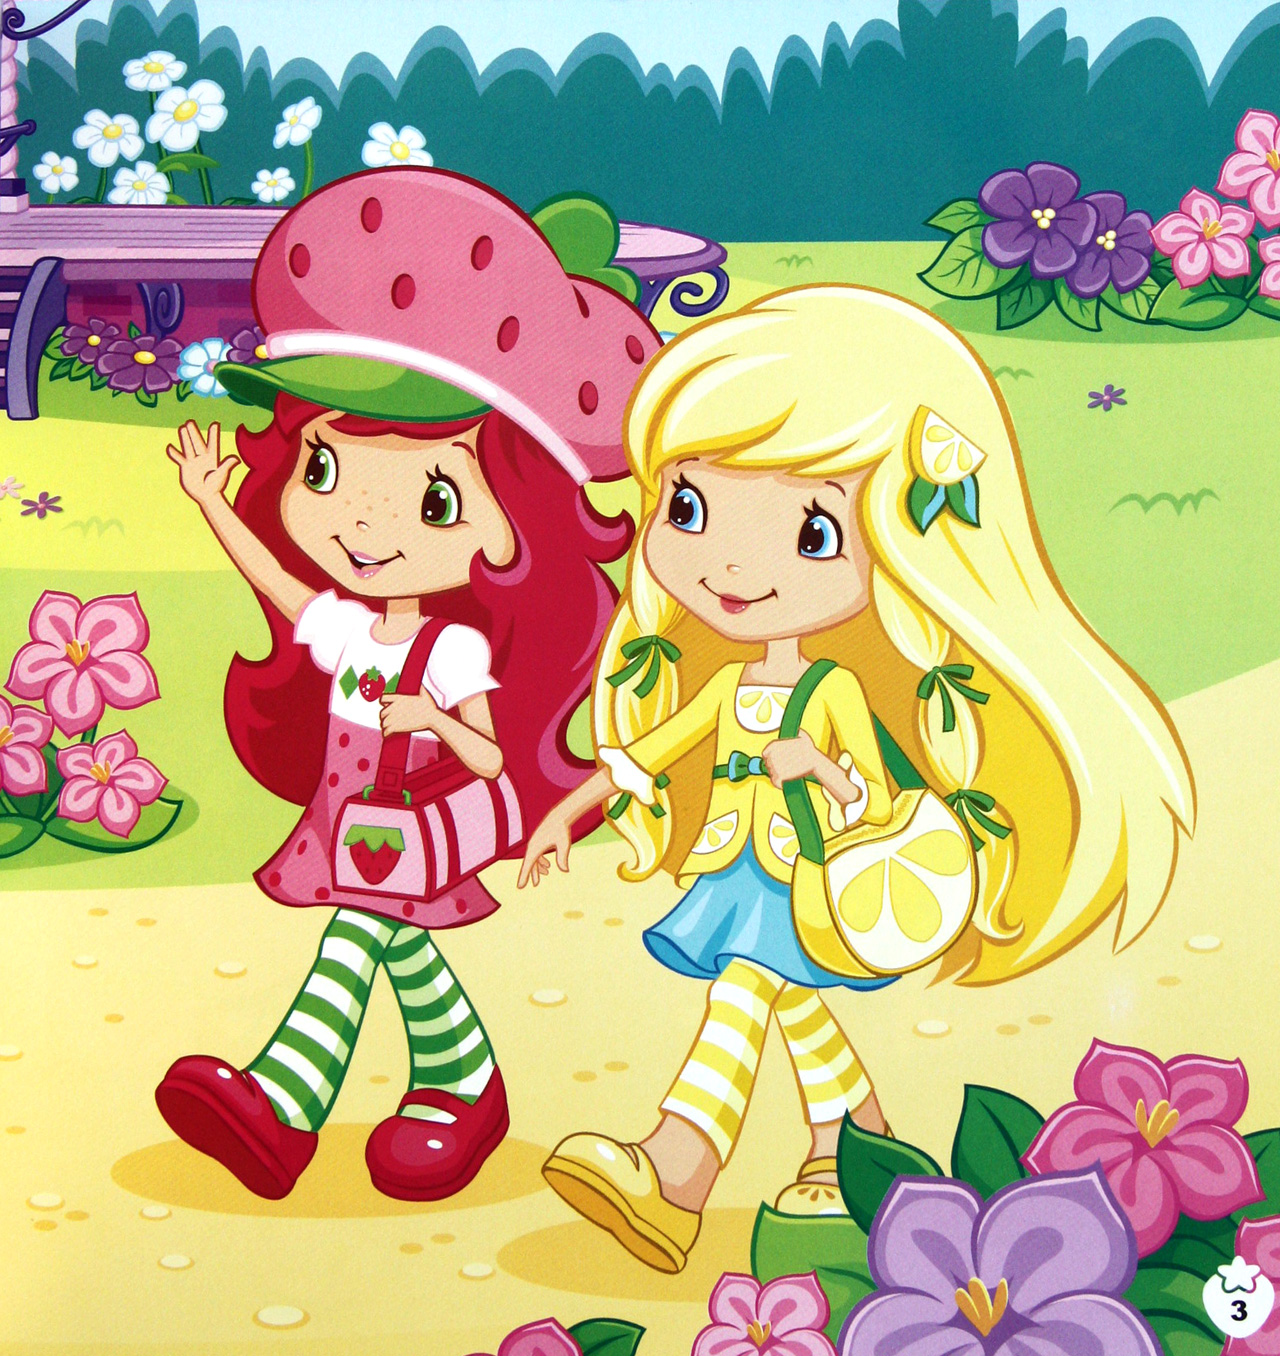 草莓甜心全集的动画片图片